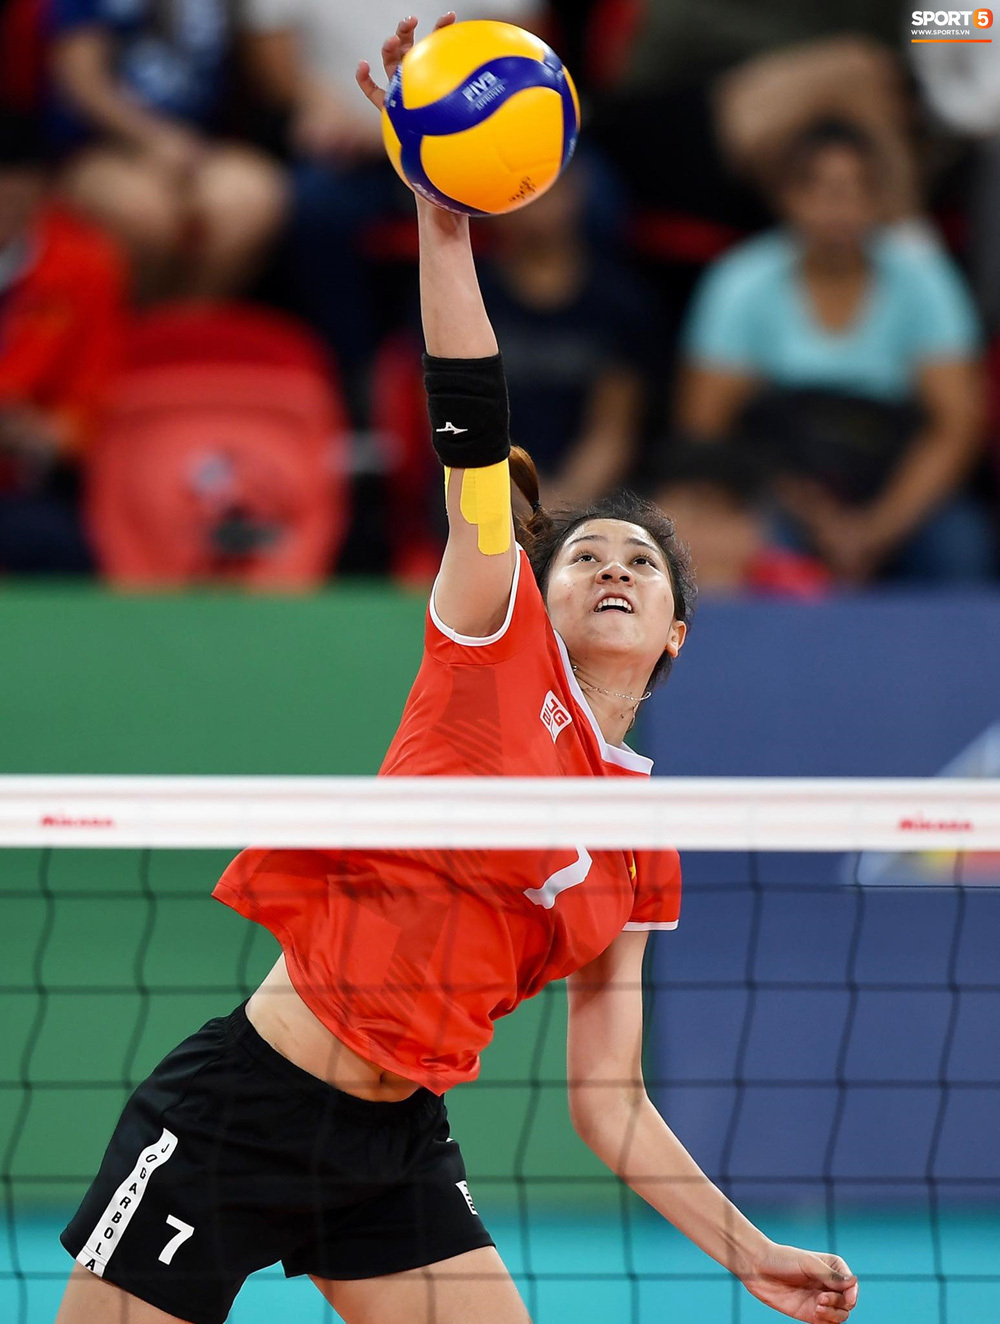  
ĐT nữ Việt Nam đã thi đấu nỗ lực trong trận chung kết. Ảnh: Sport 5